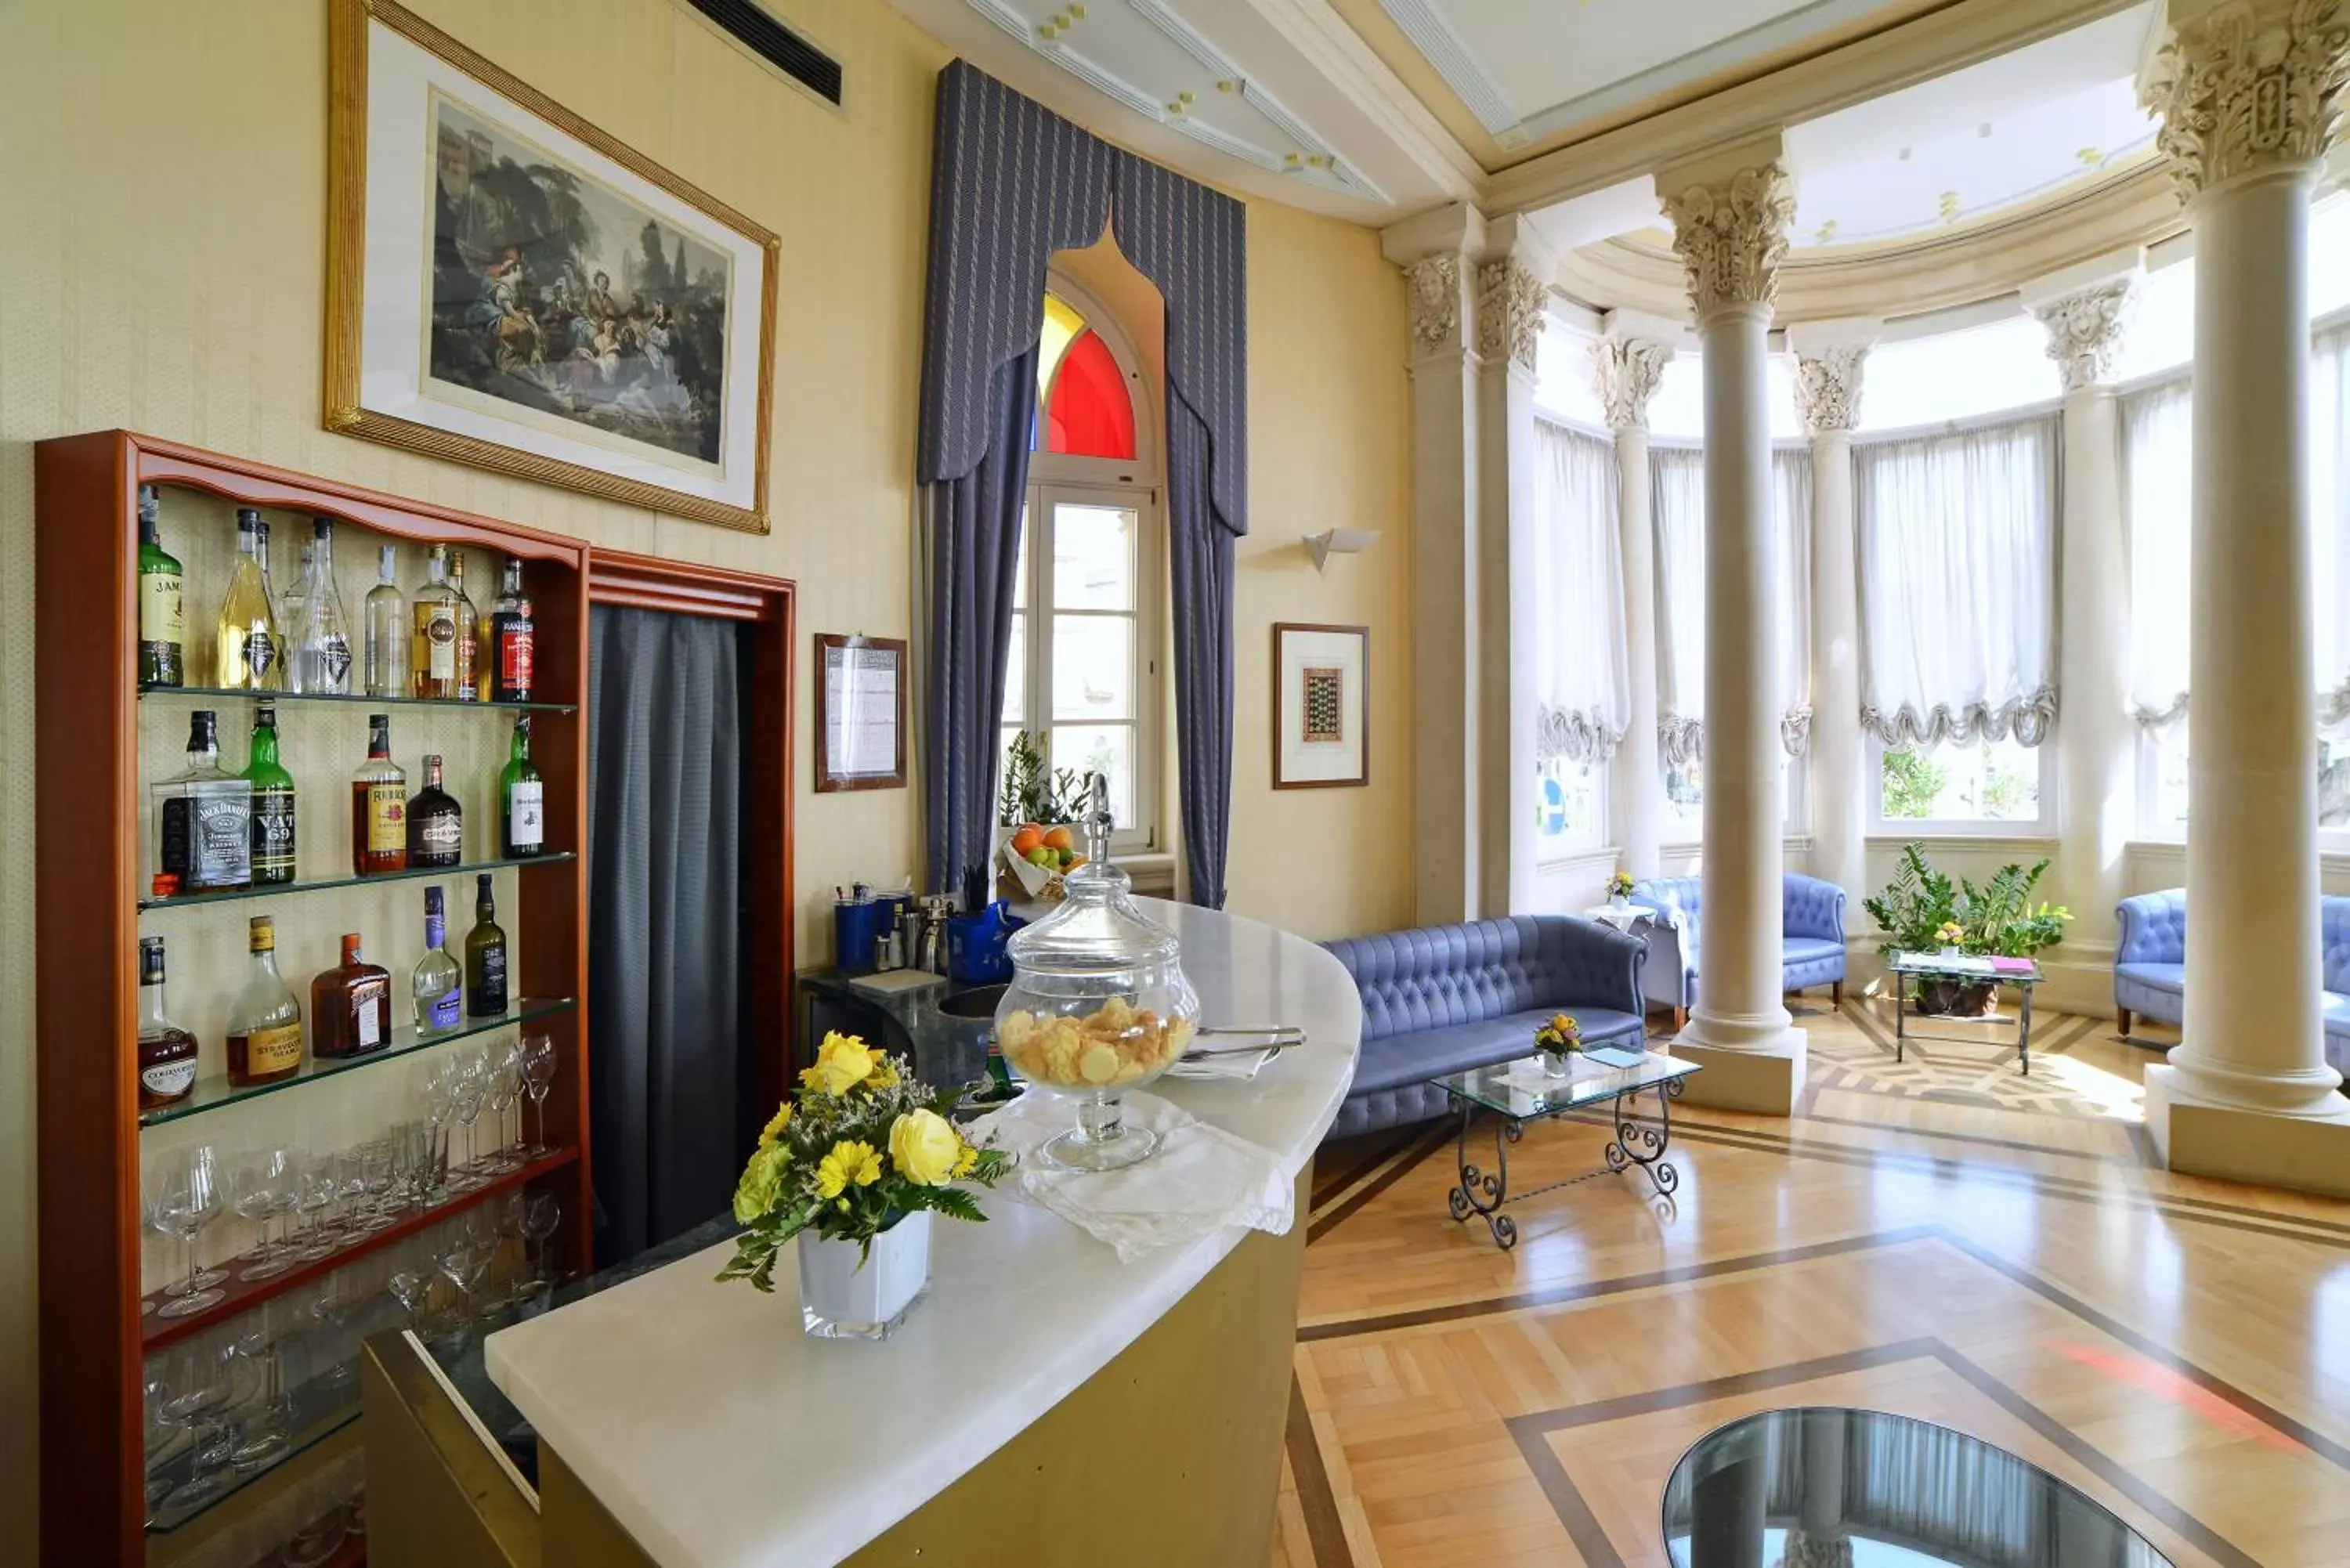 Lobby or reception in Grand Hotel Ortigia